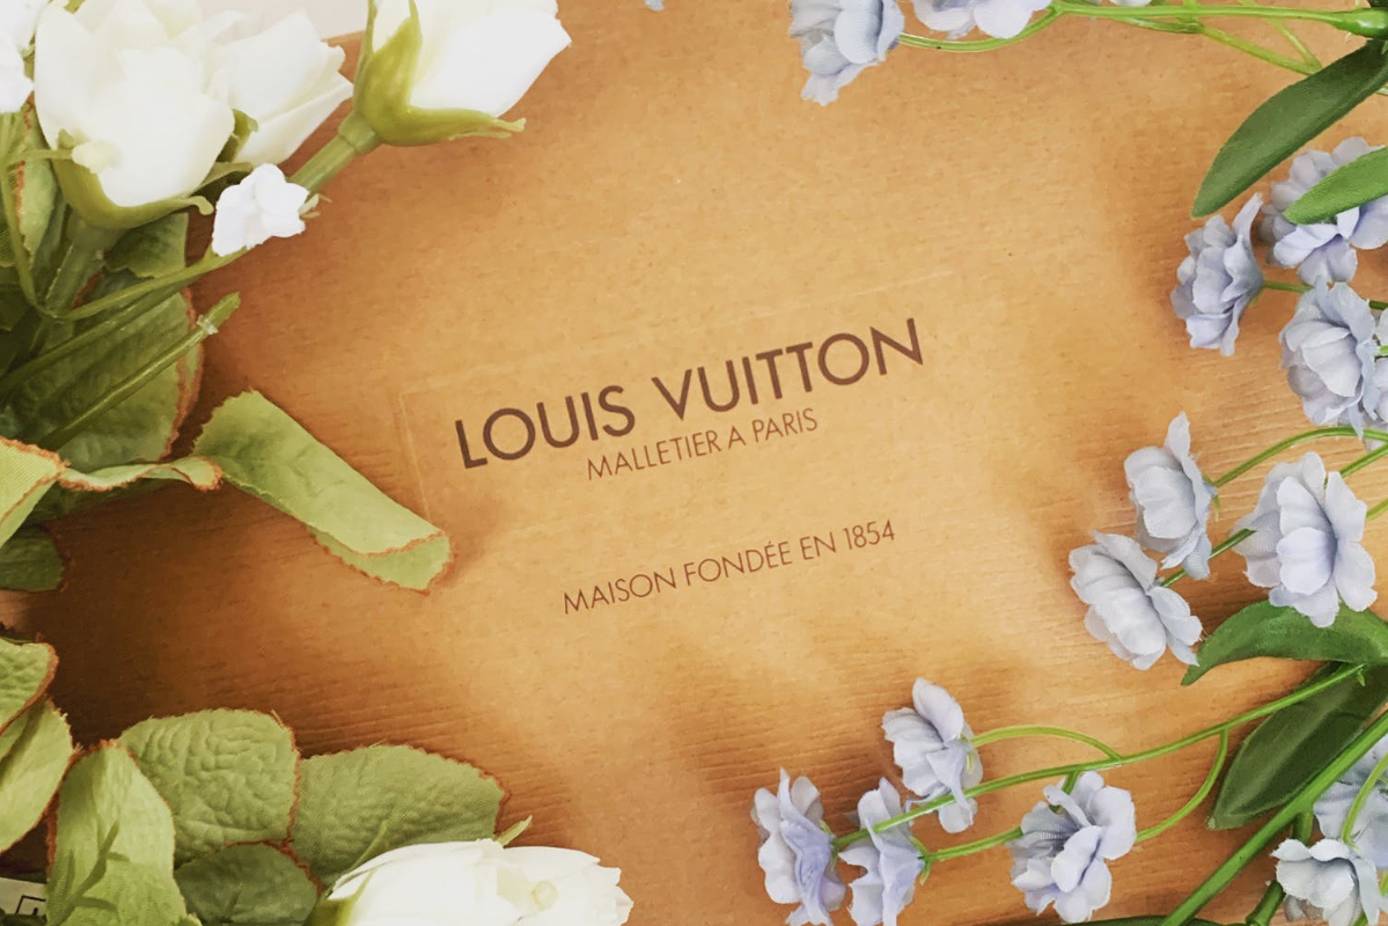 Louis Vuitton dona un millón de euros para la infancia de Ucrania